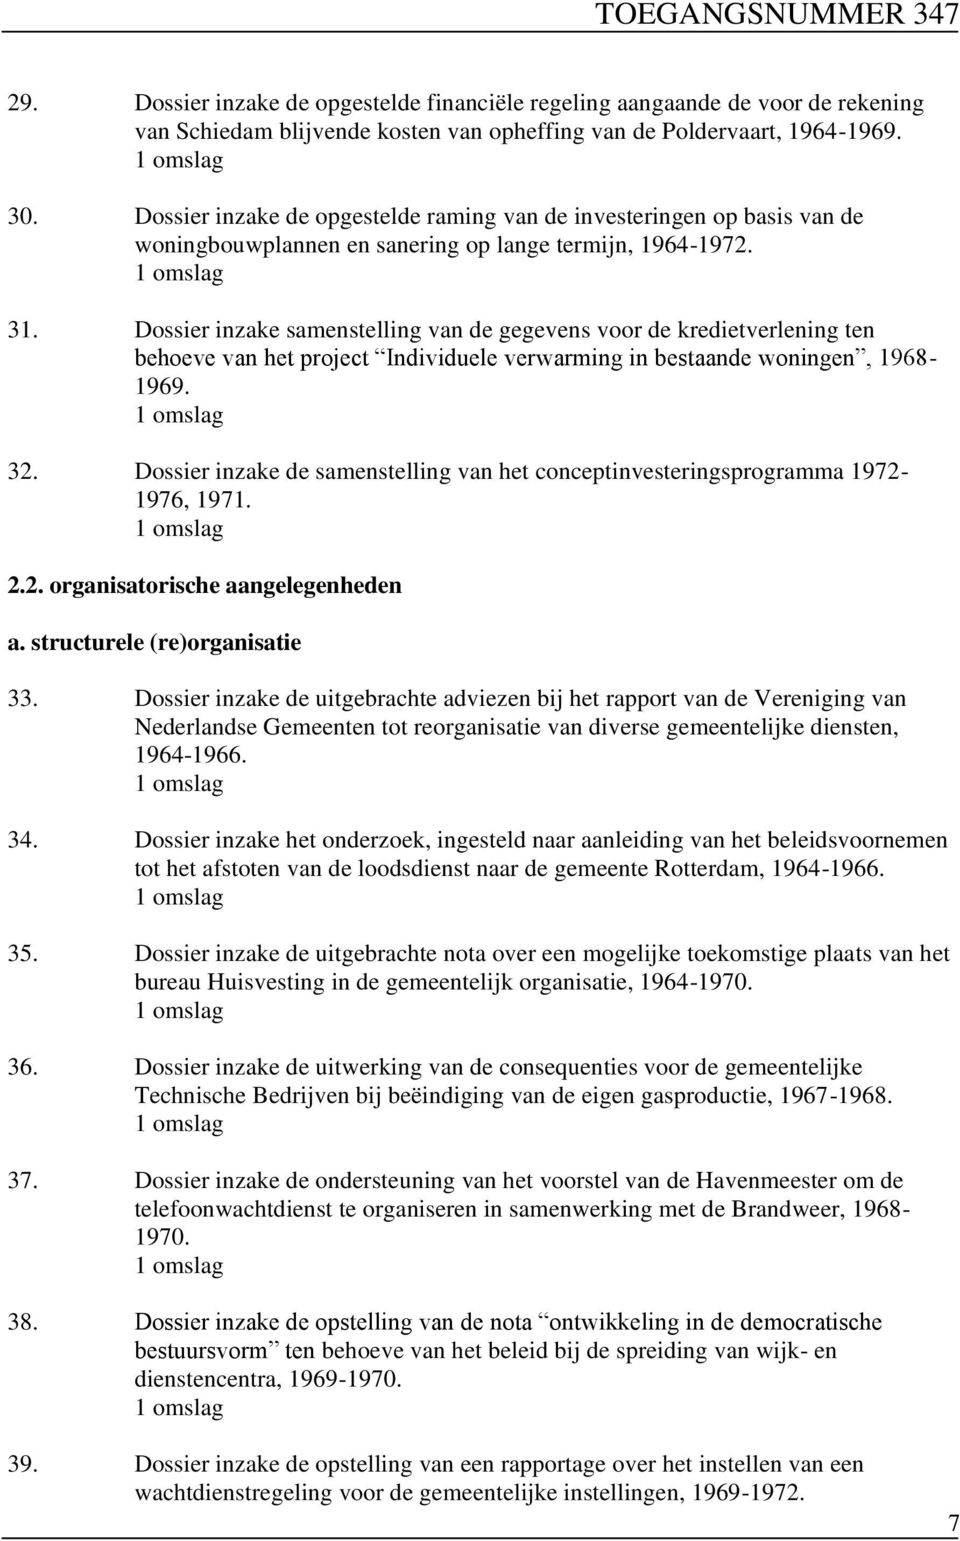 Dossier inzake samenstelling van de gegevens voor de kredietverlening ten behoeve van het project Individuele verwarming in bestaande woningen, 1968-1969. 32.